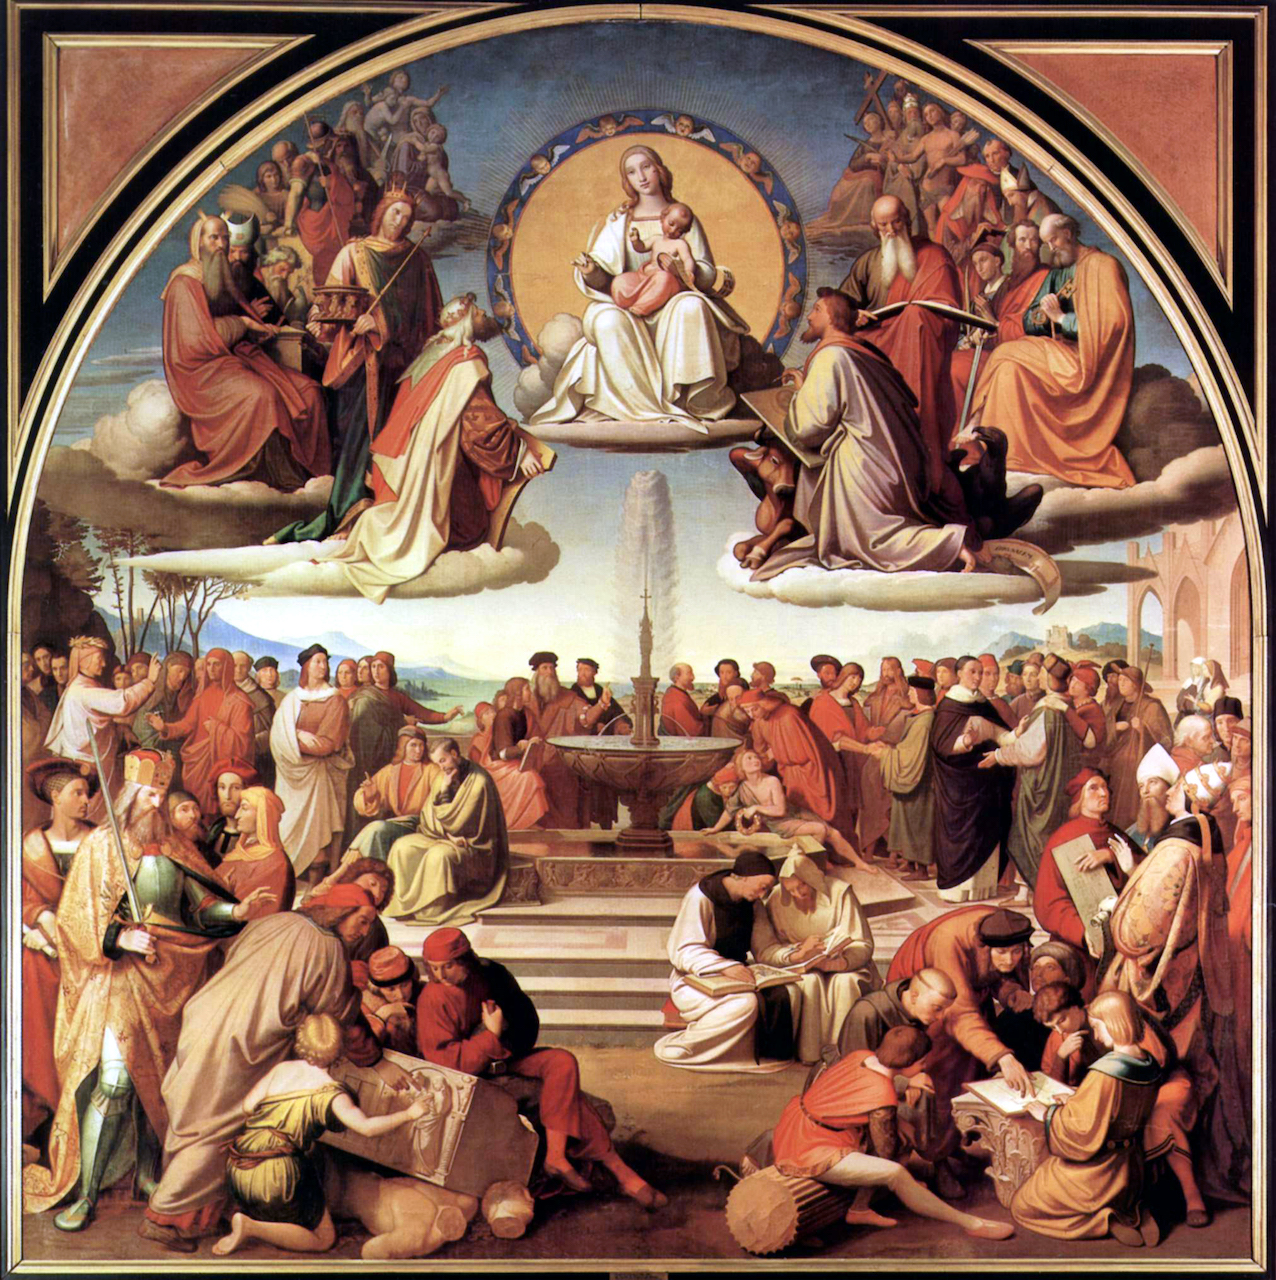 Friedrich Overbeck. Der Triumph der Religion in den Küsten. 1831-40. Öl/Leinwand. 392 x 392cm